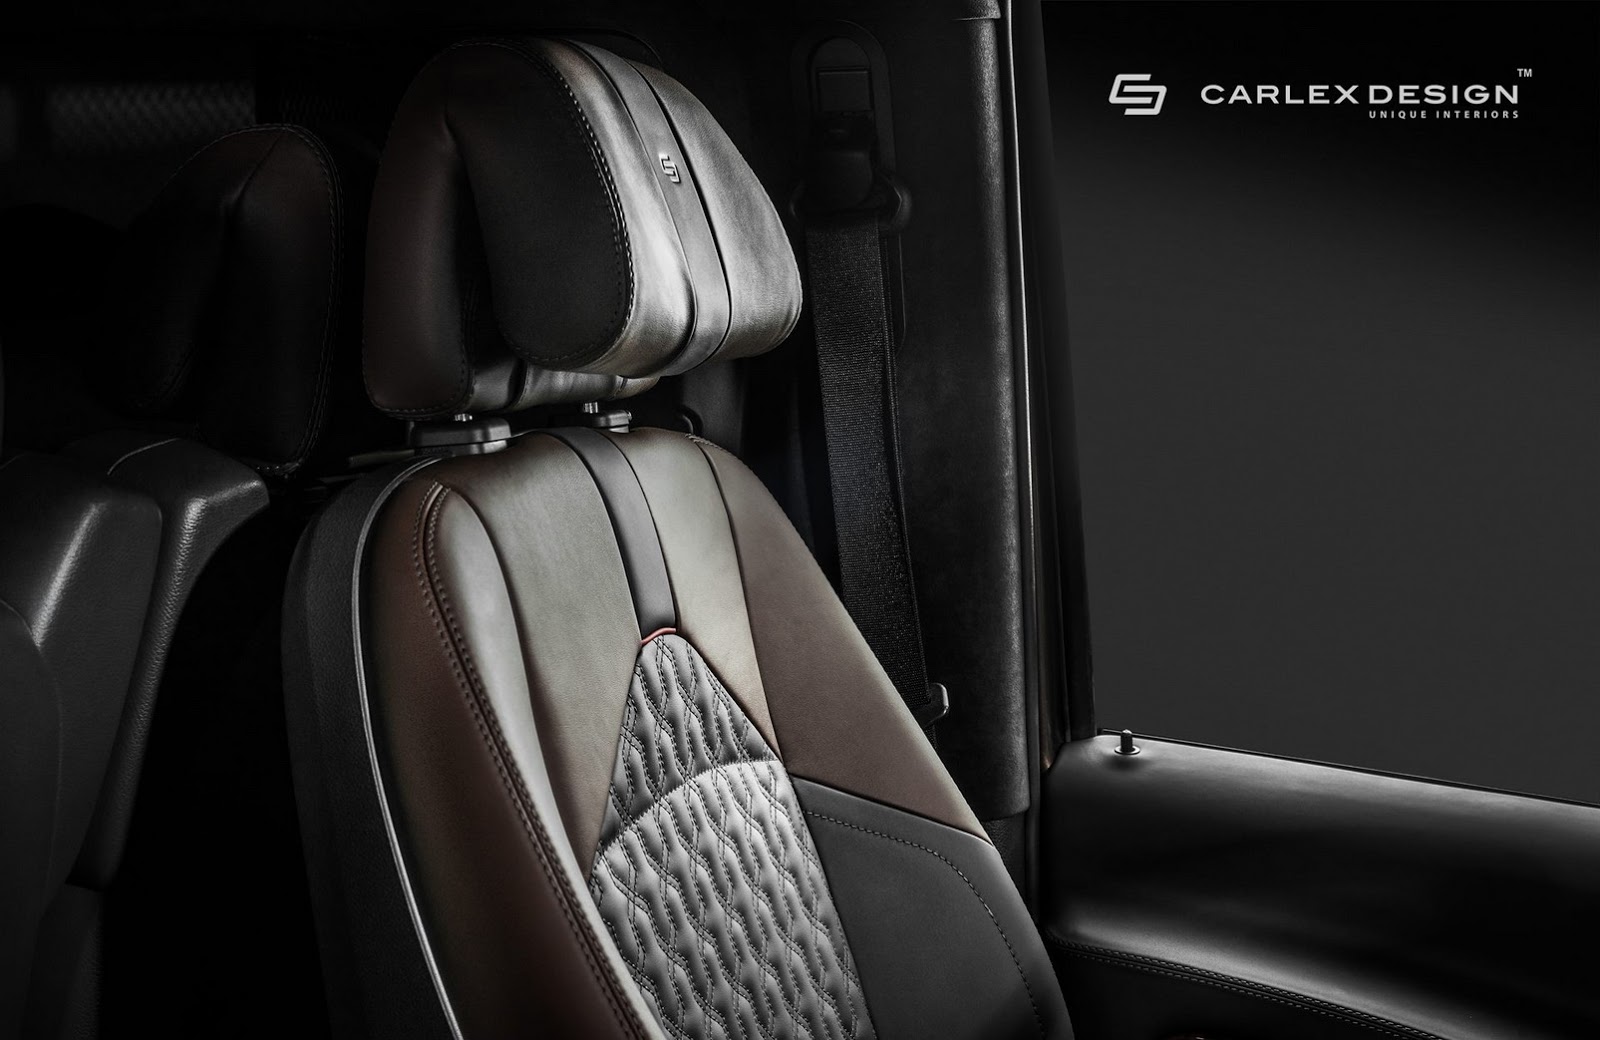 Luxury Truck - Carlex Design Interior in Mercedes Viano